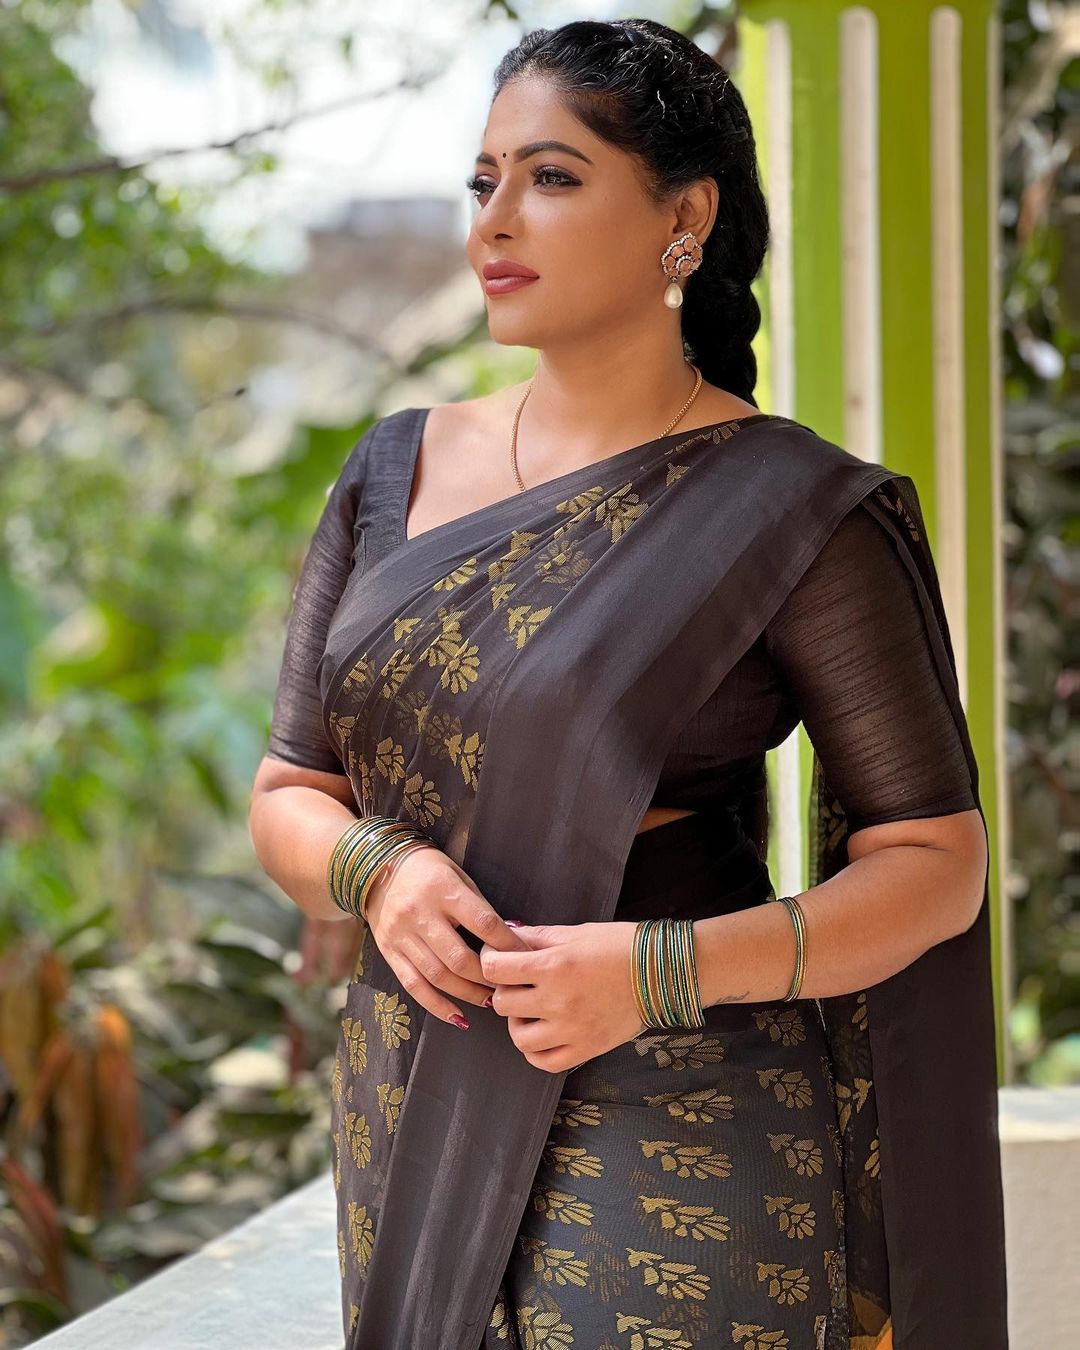 Reshma pasupuleti hot traditional saree wear photos